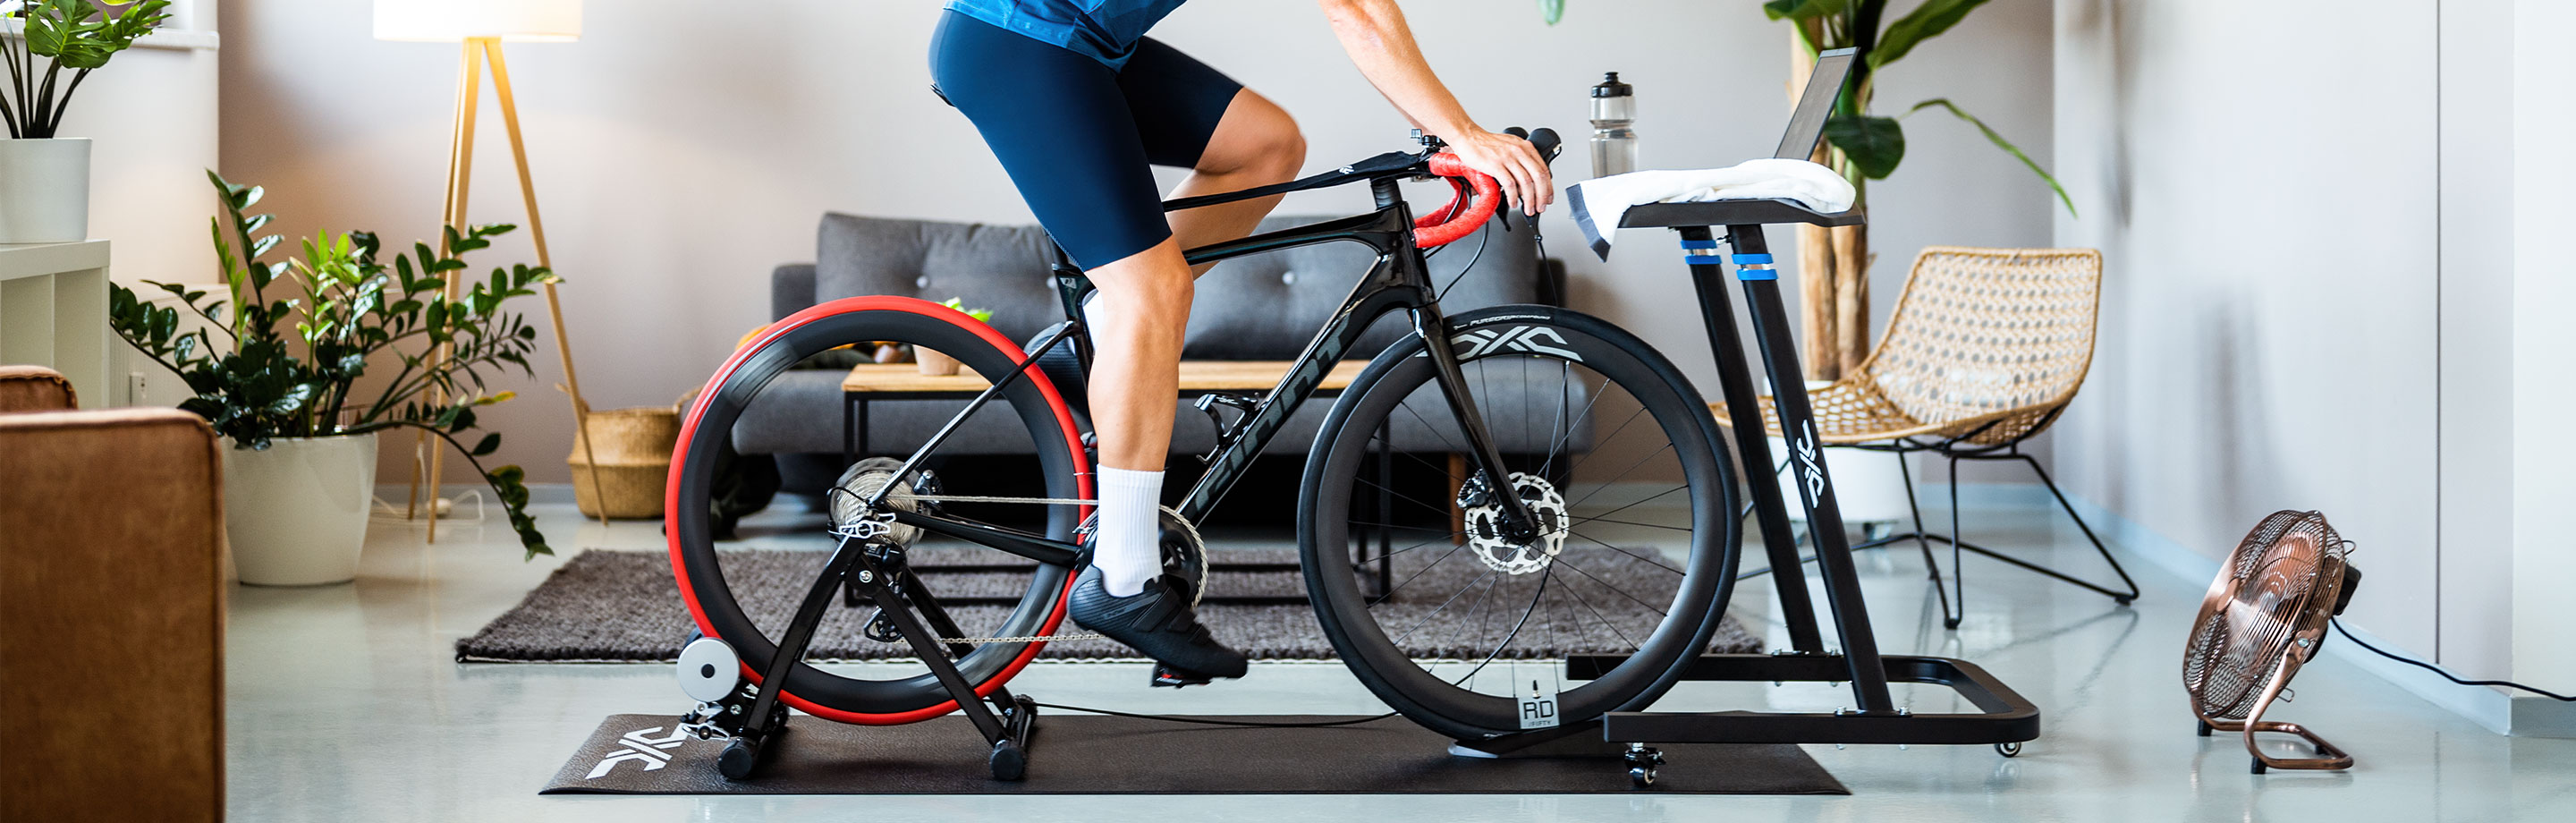 DXC fietsonderdelen en accessoires voor je fiets